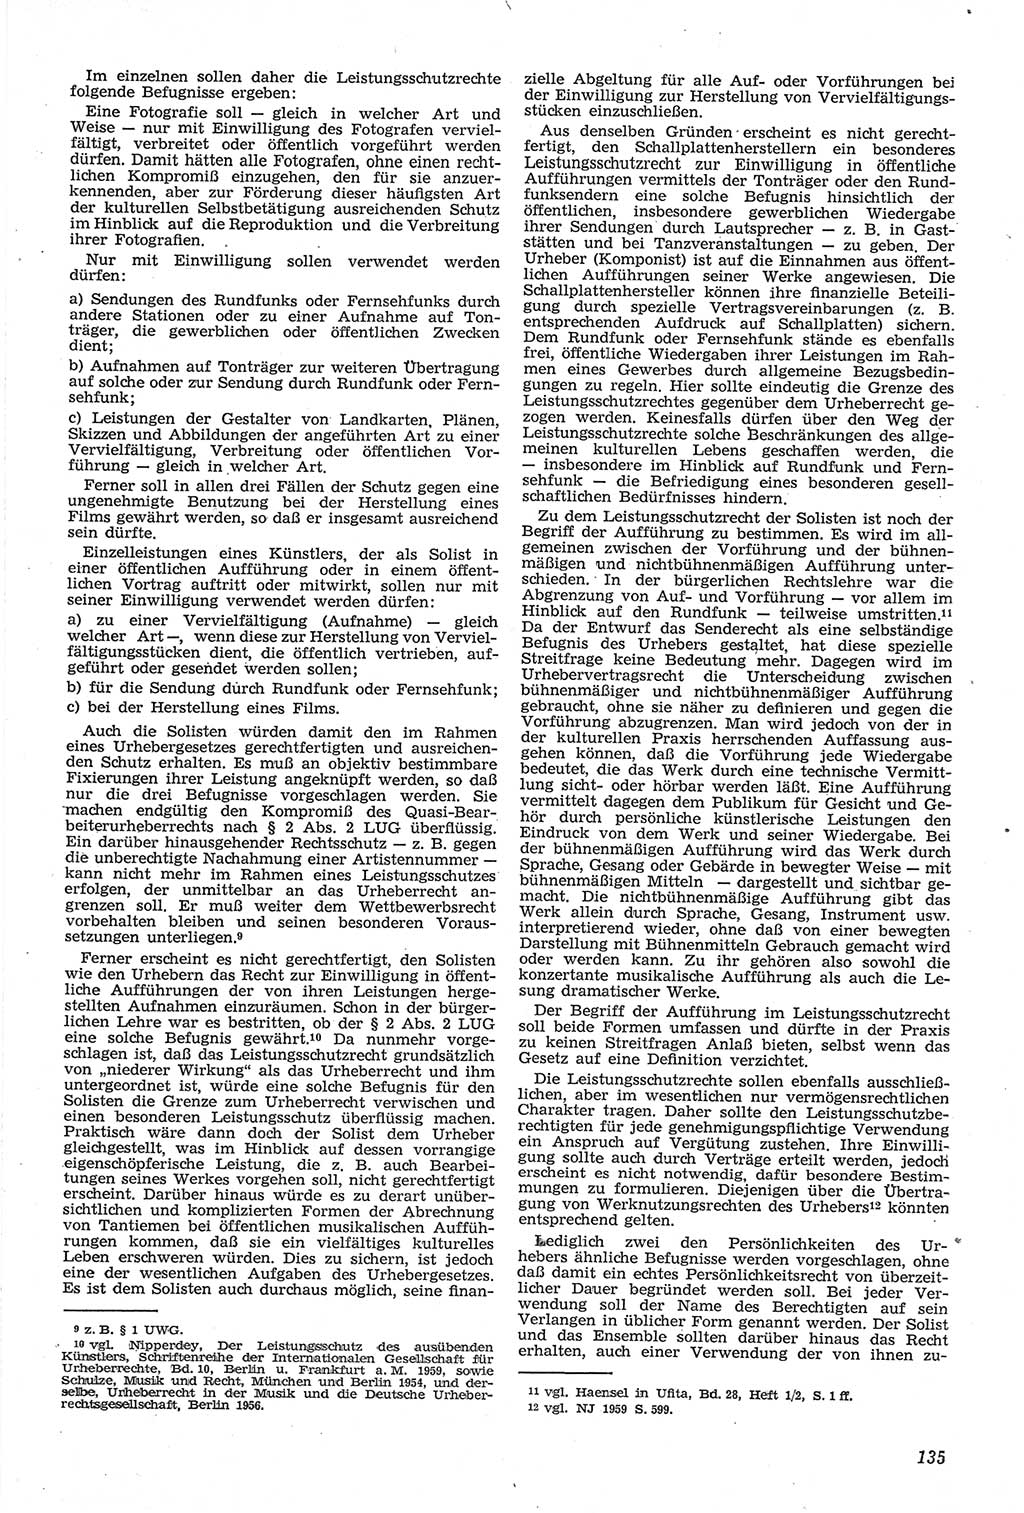 Neue Justiz (NJ), Zeitschrift für Recht und Rechtswissenschaft [Deutsche Demokratische Republik (DDR)], 14. Jahrgang 1960, Seite 135 (NJ DDR 1960, S. 135)